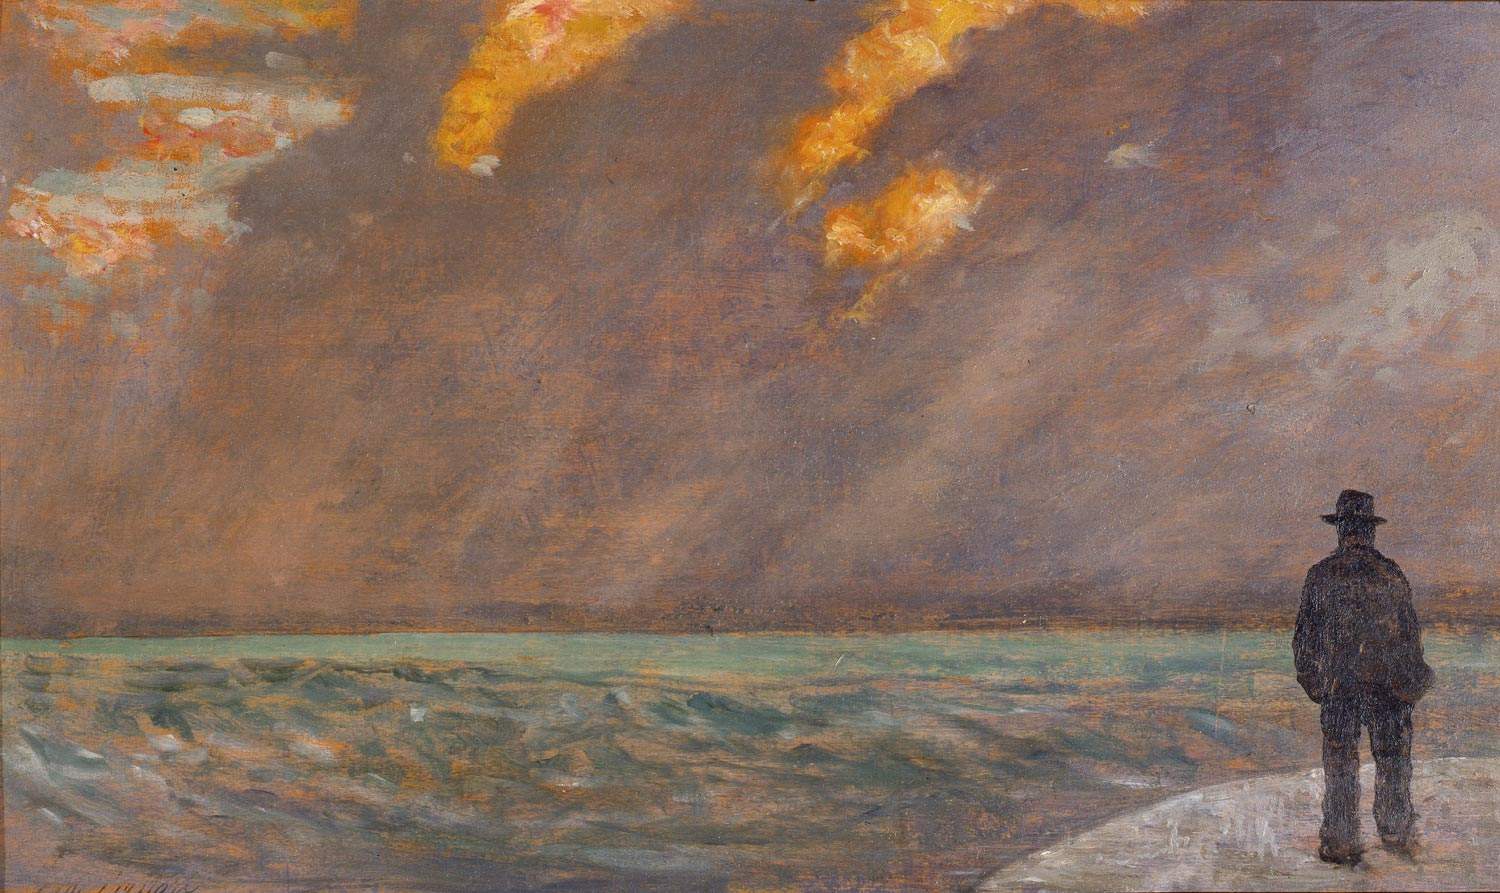 quadri famosi tramonto sul mare e spiaggia